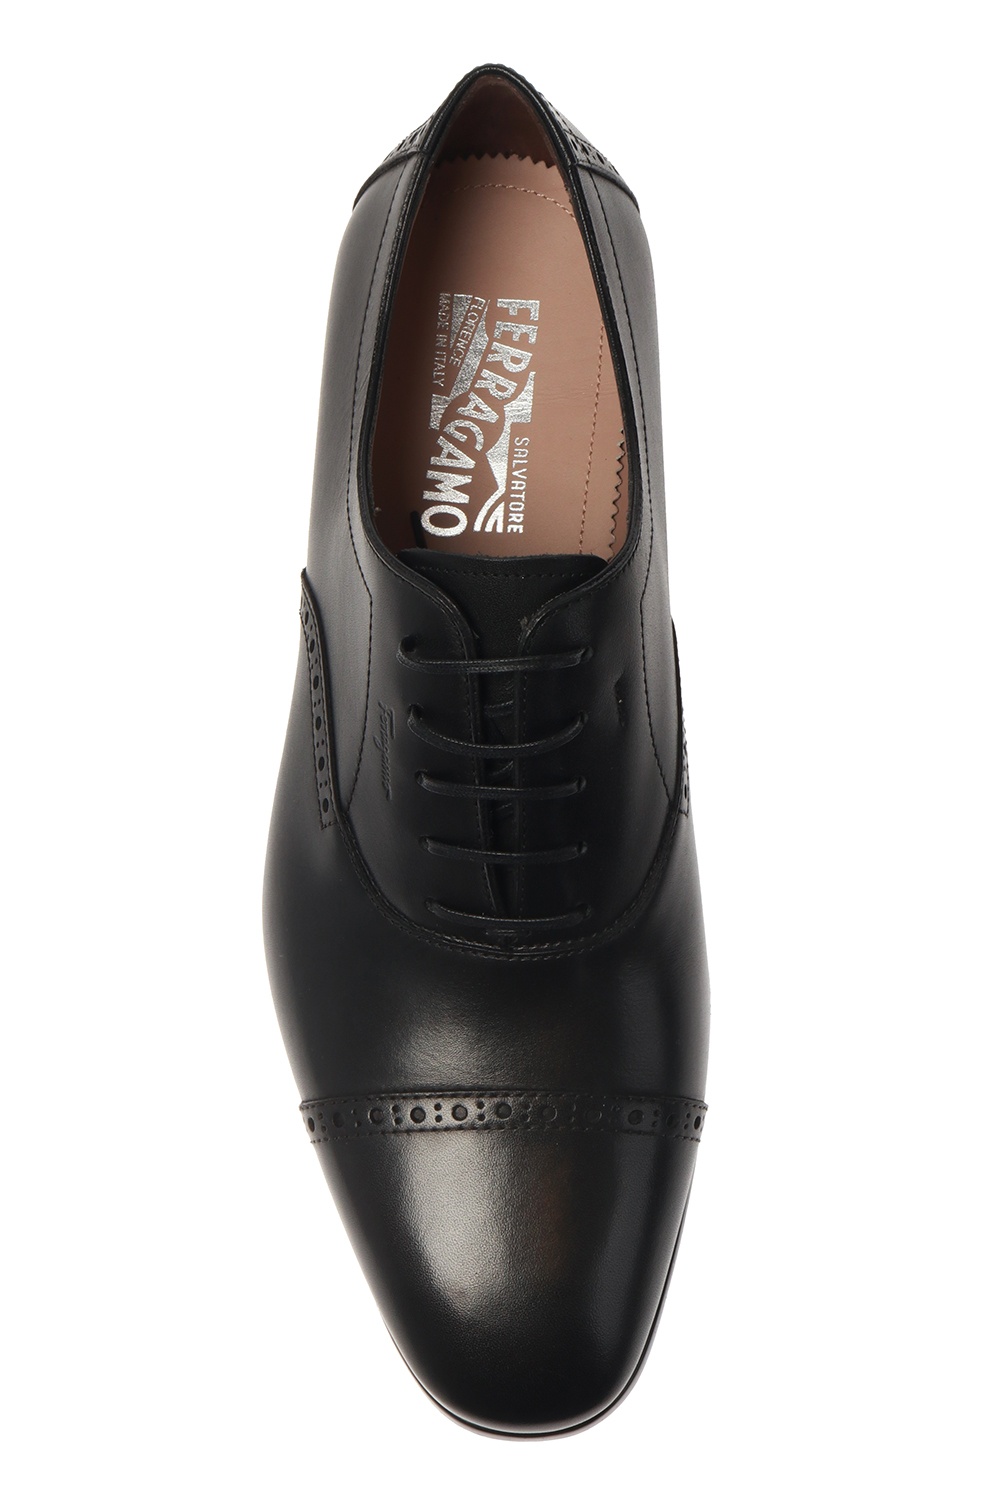 Salvatore Ferragamo ‘Riley’ leather shoes